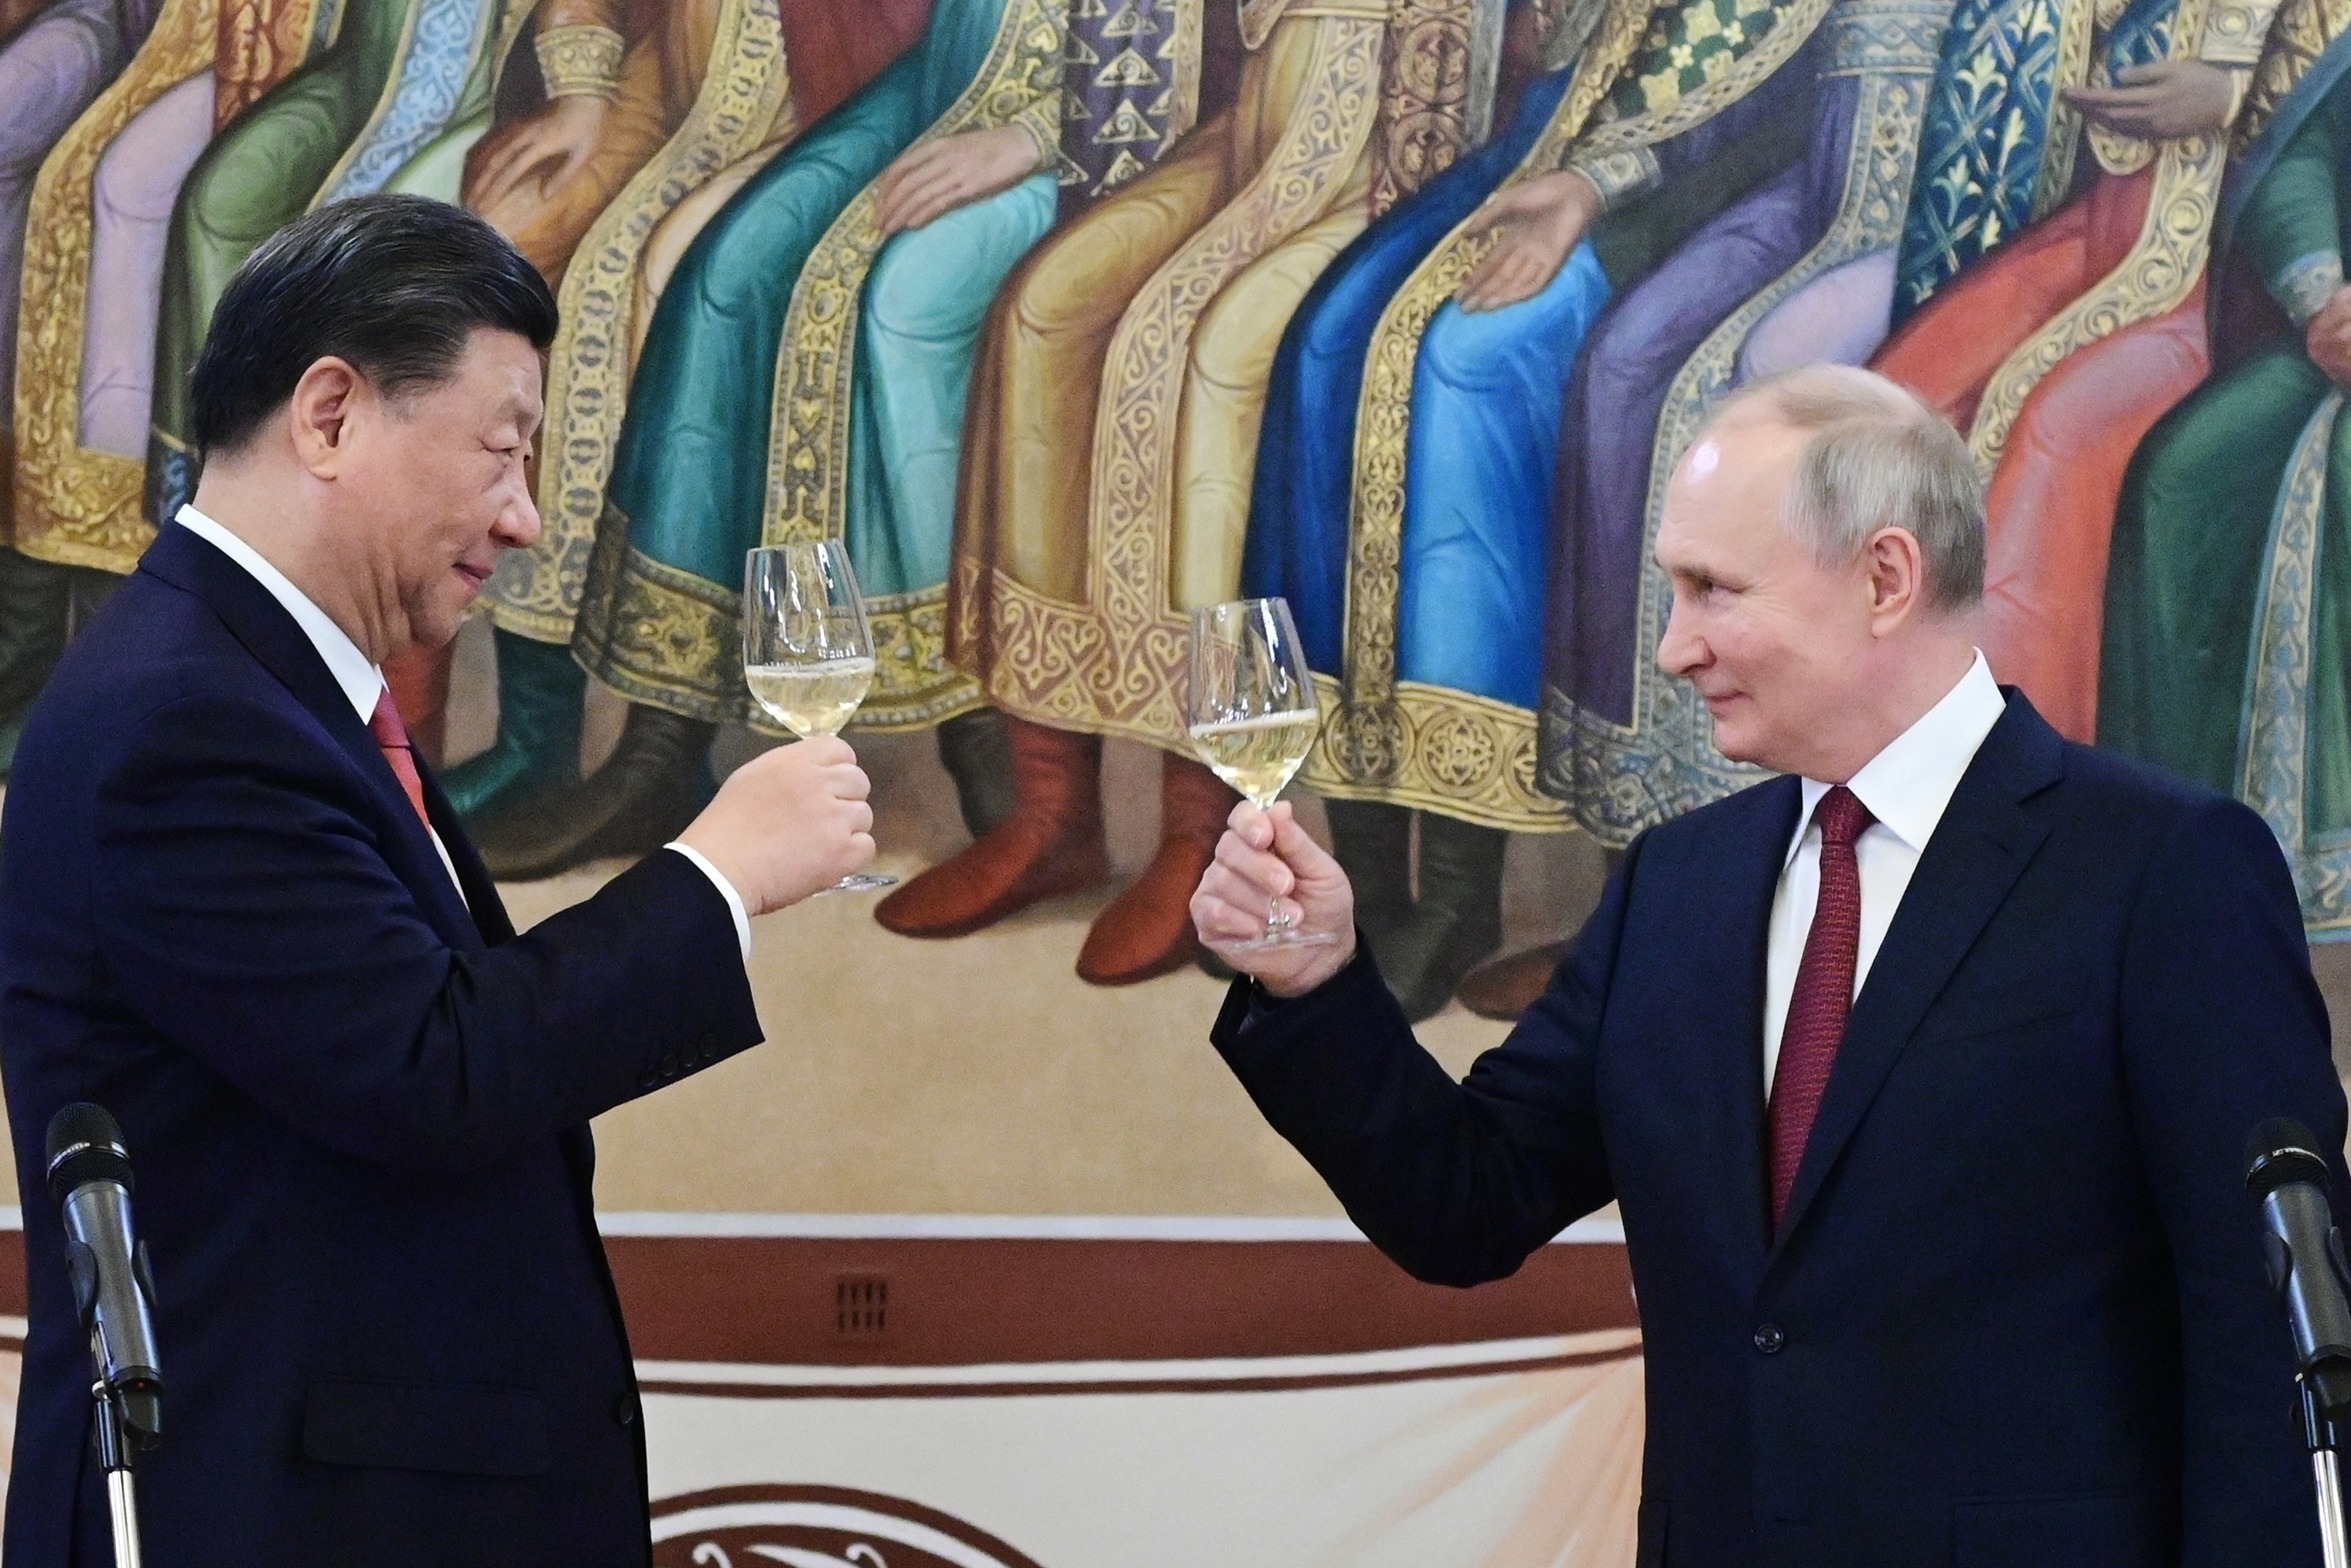 Banquete, brindis y una promesa final: así se despidieron Xi Jinping y Vladimir Putin tras su encuentro en Moscú      